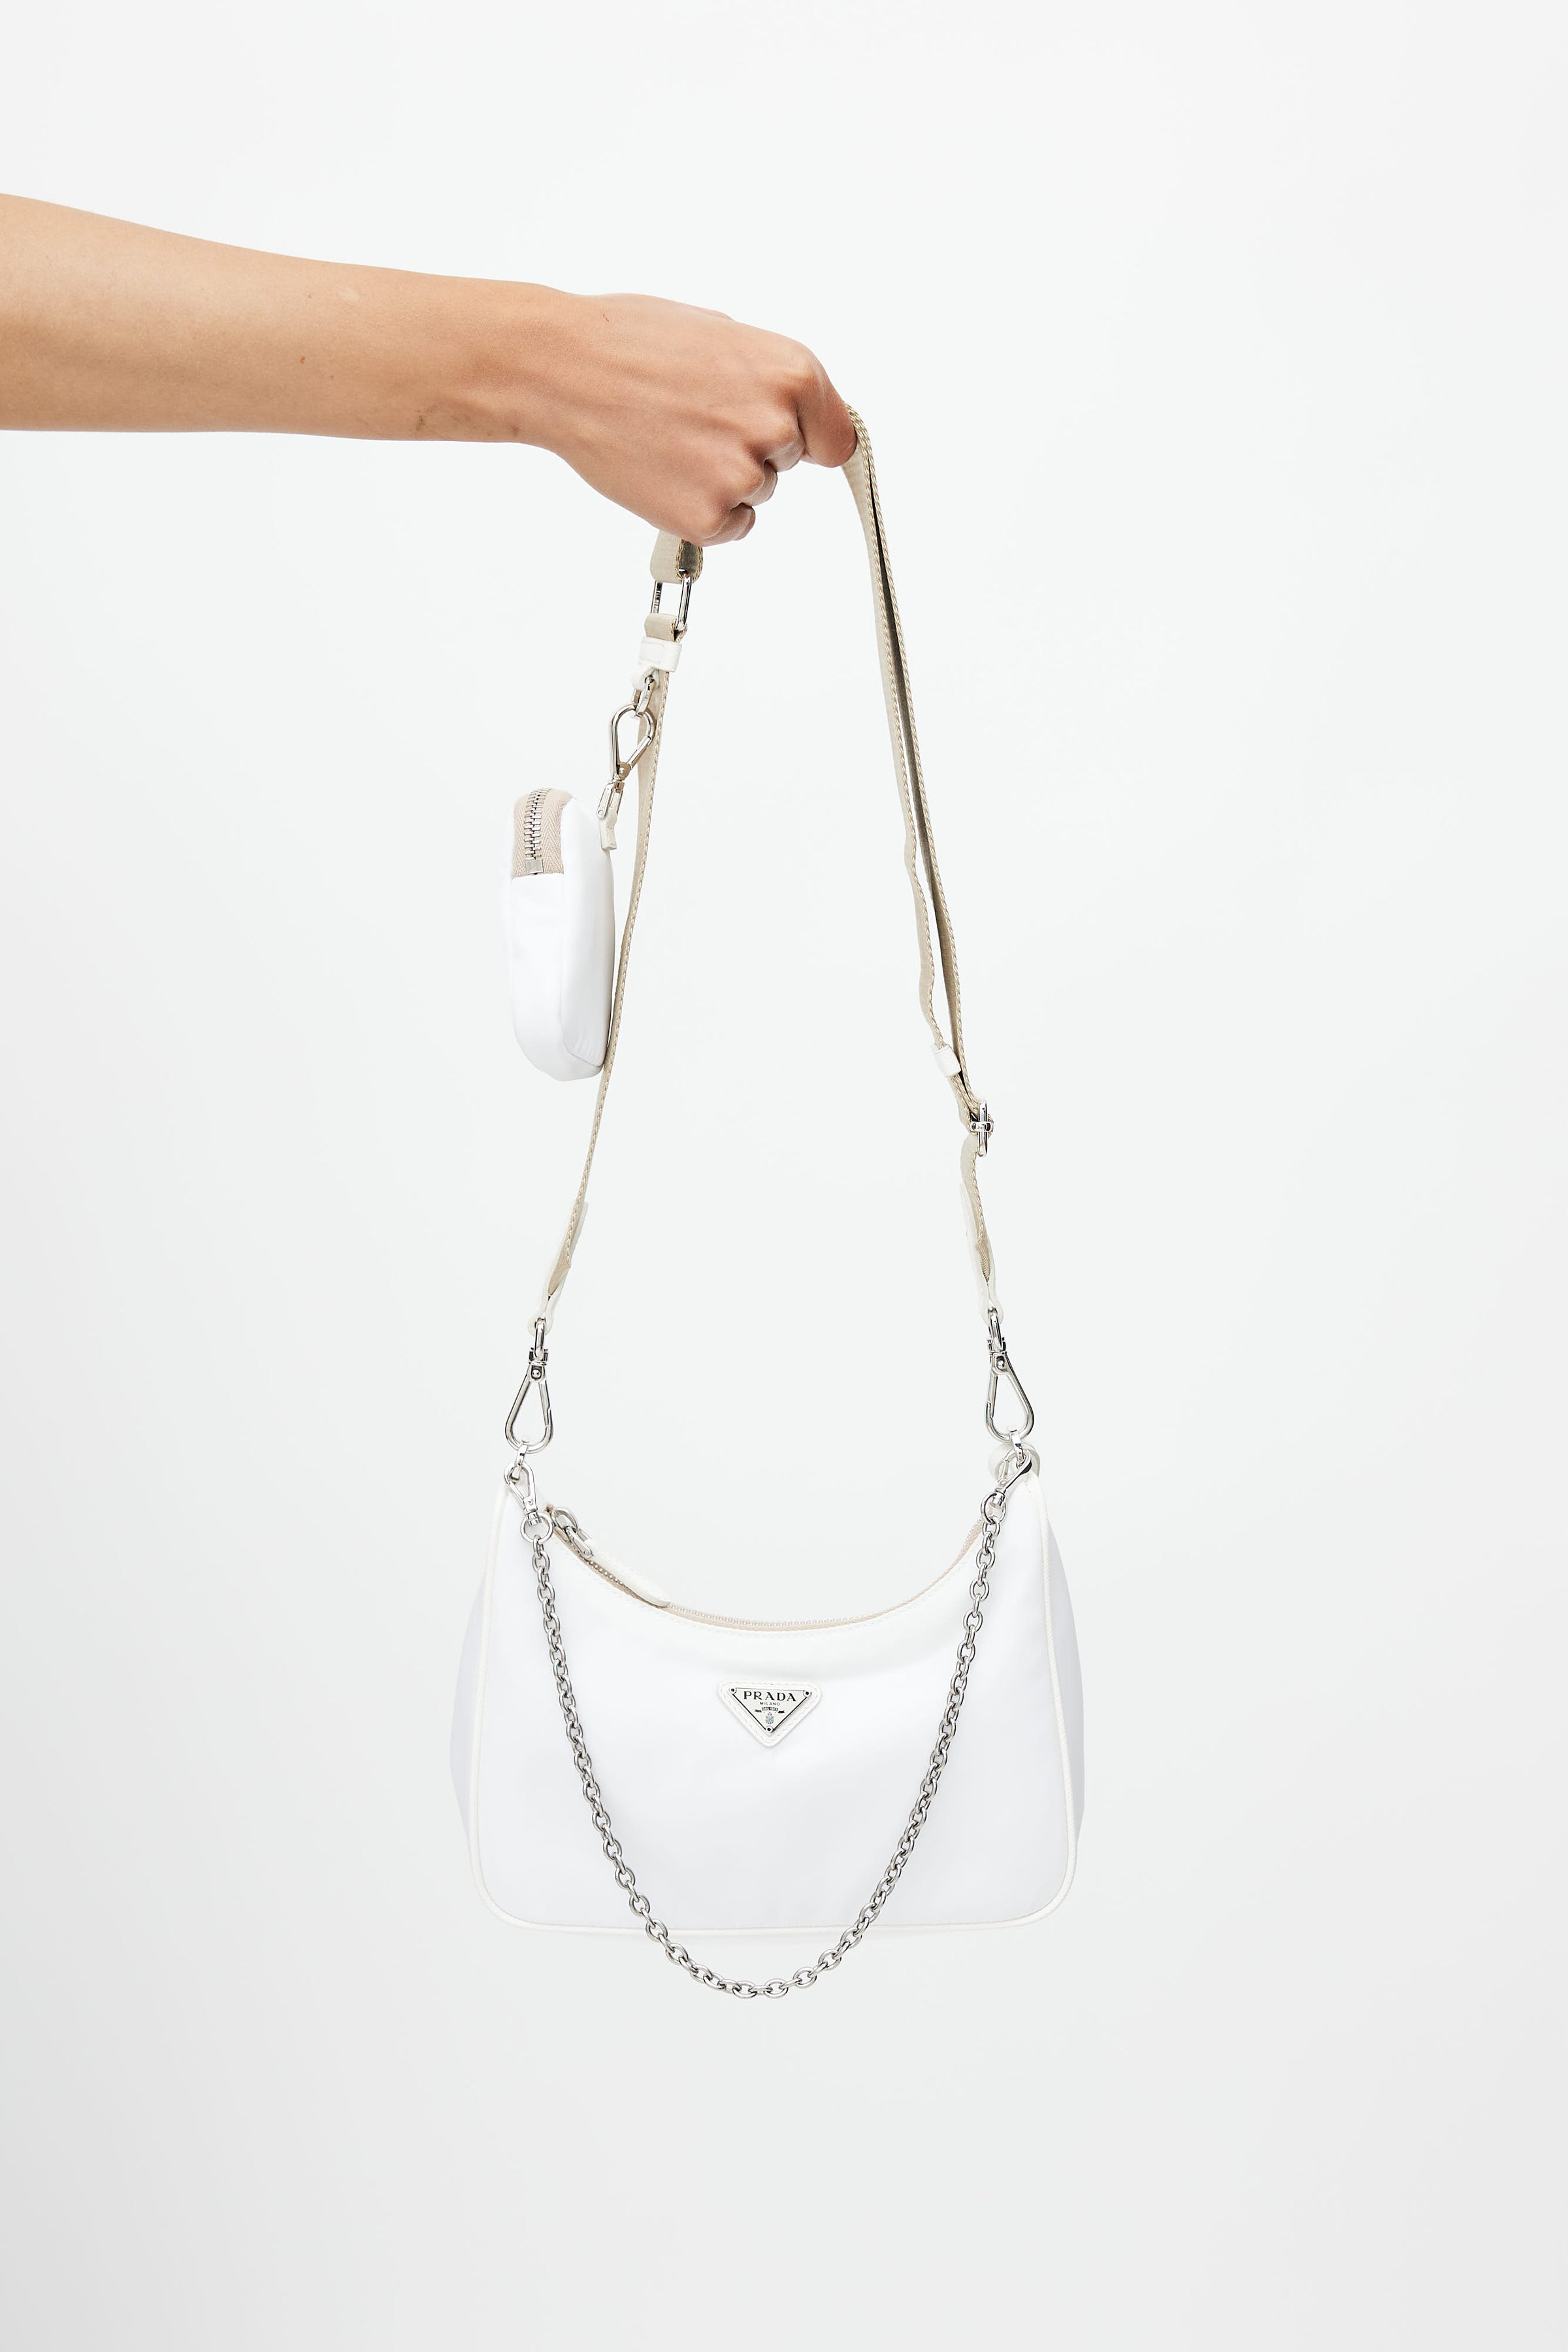 Prada // White Re-Edition 2005 Mini Shoulder Bag – VSP Consignment